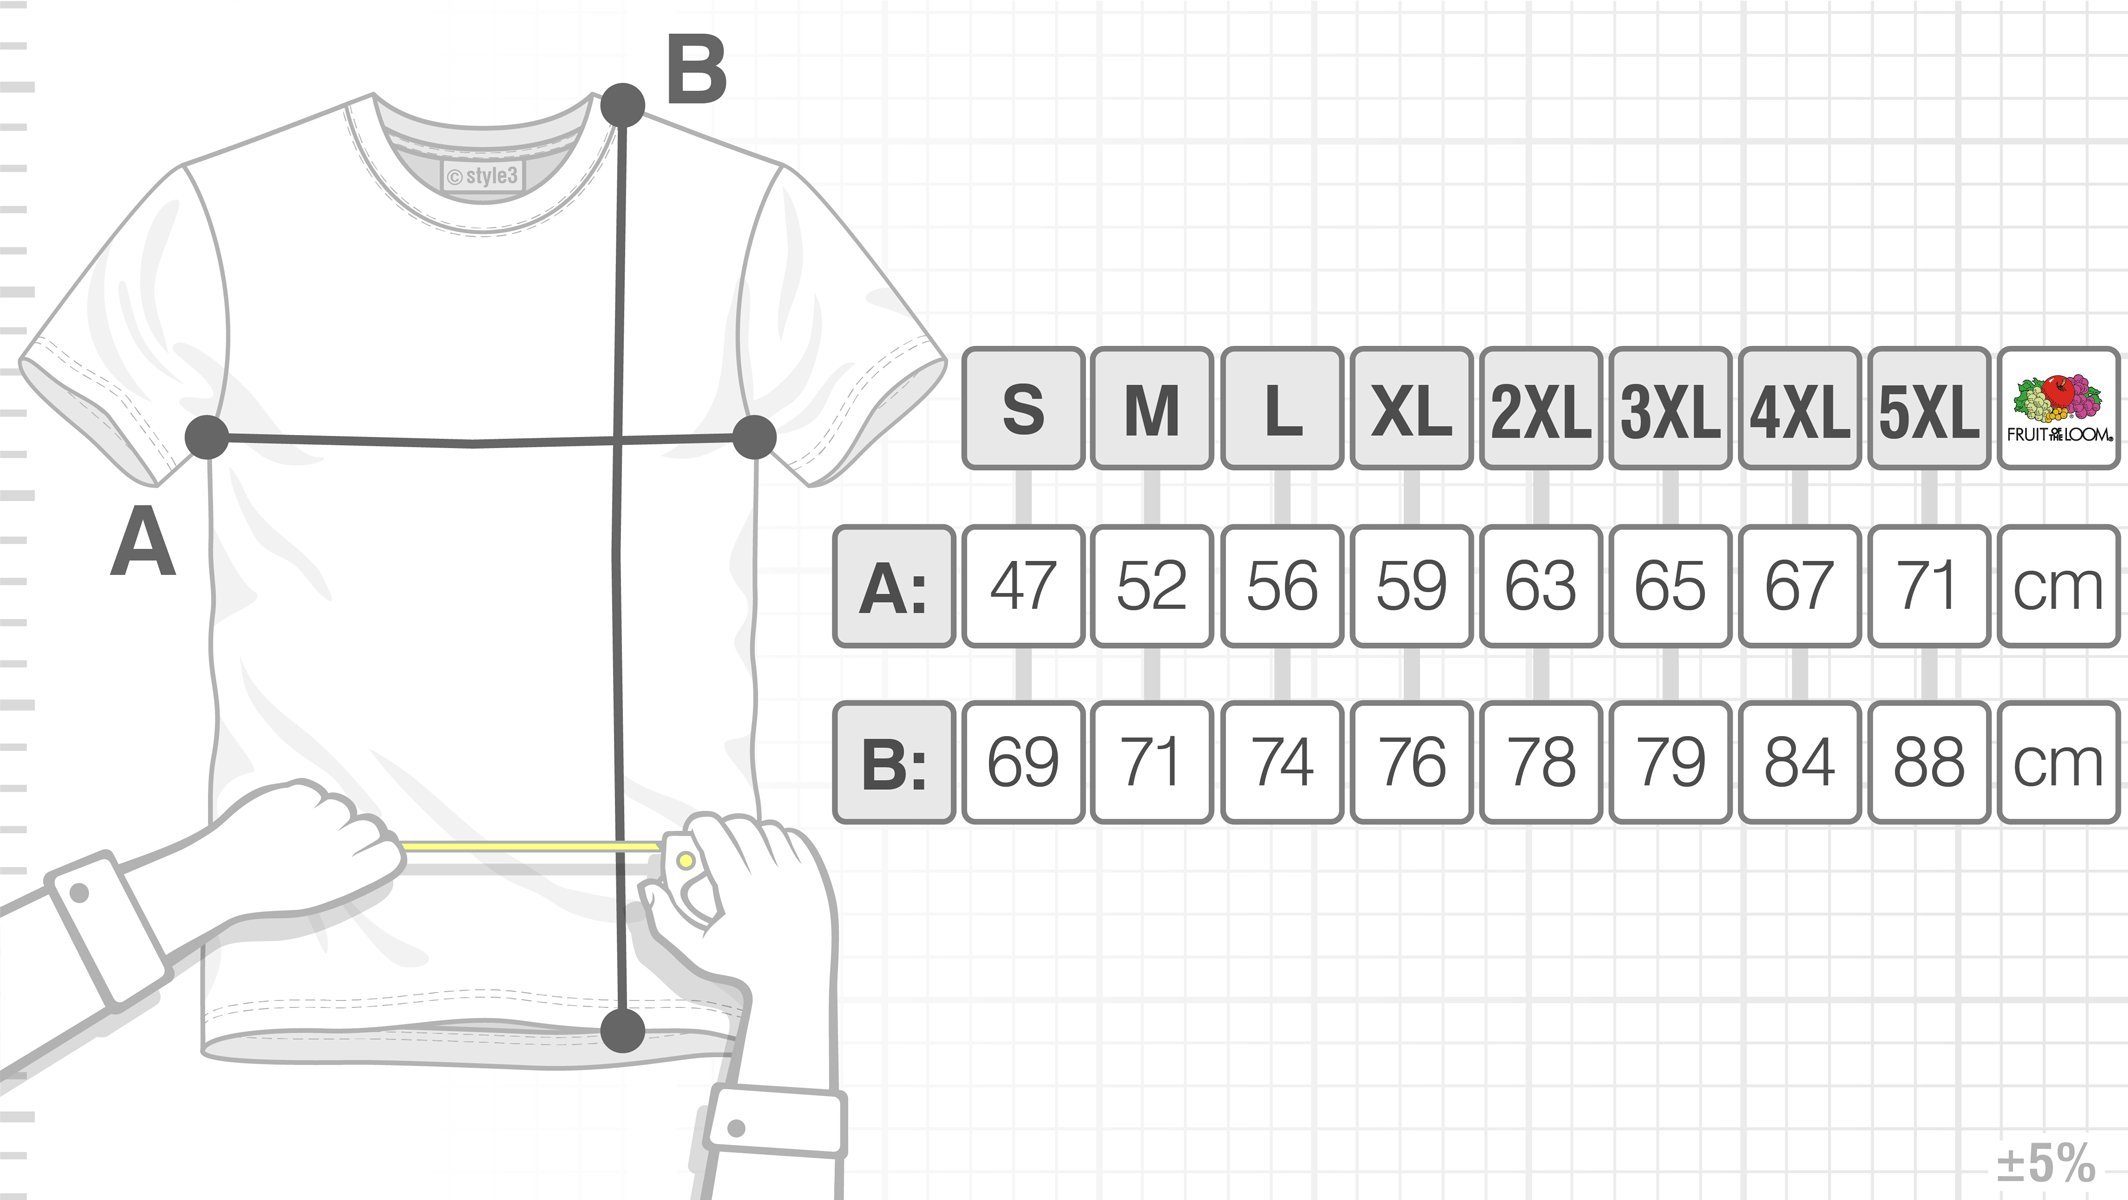 Print-Shirt Dreieck Theory T-Shirt grün Big bang würfel Penrose Cube Herren Cooper Sheldon Escher style3